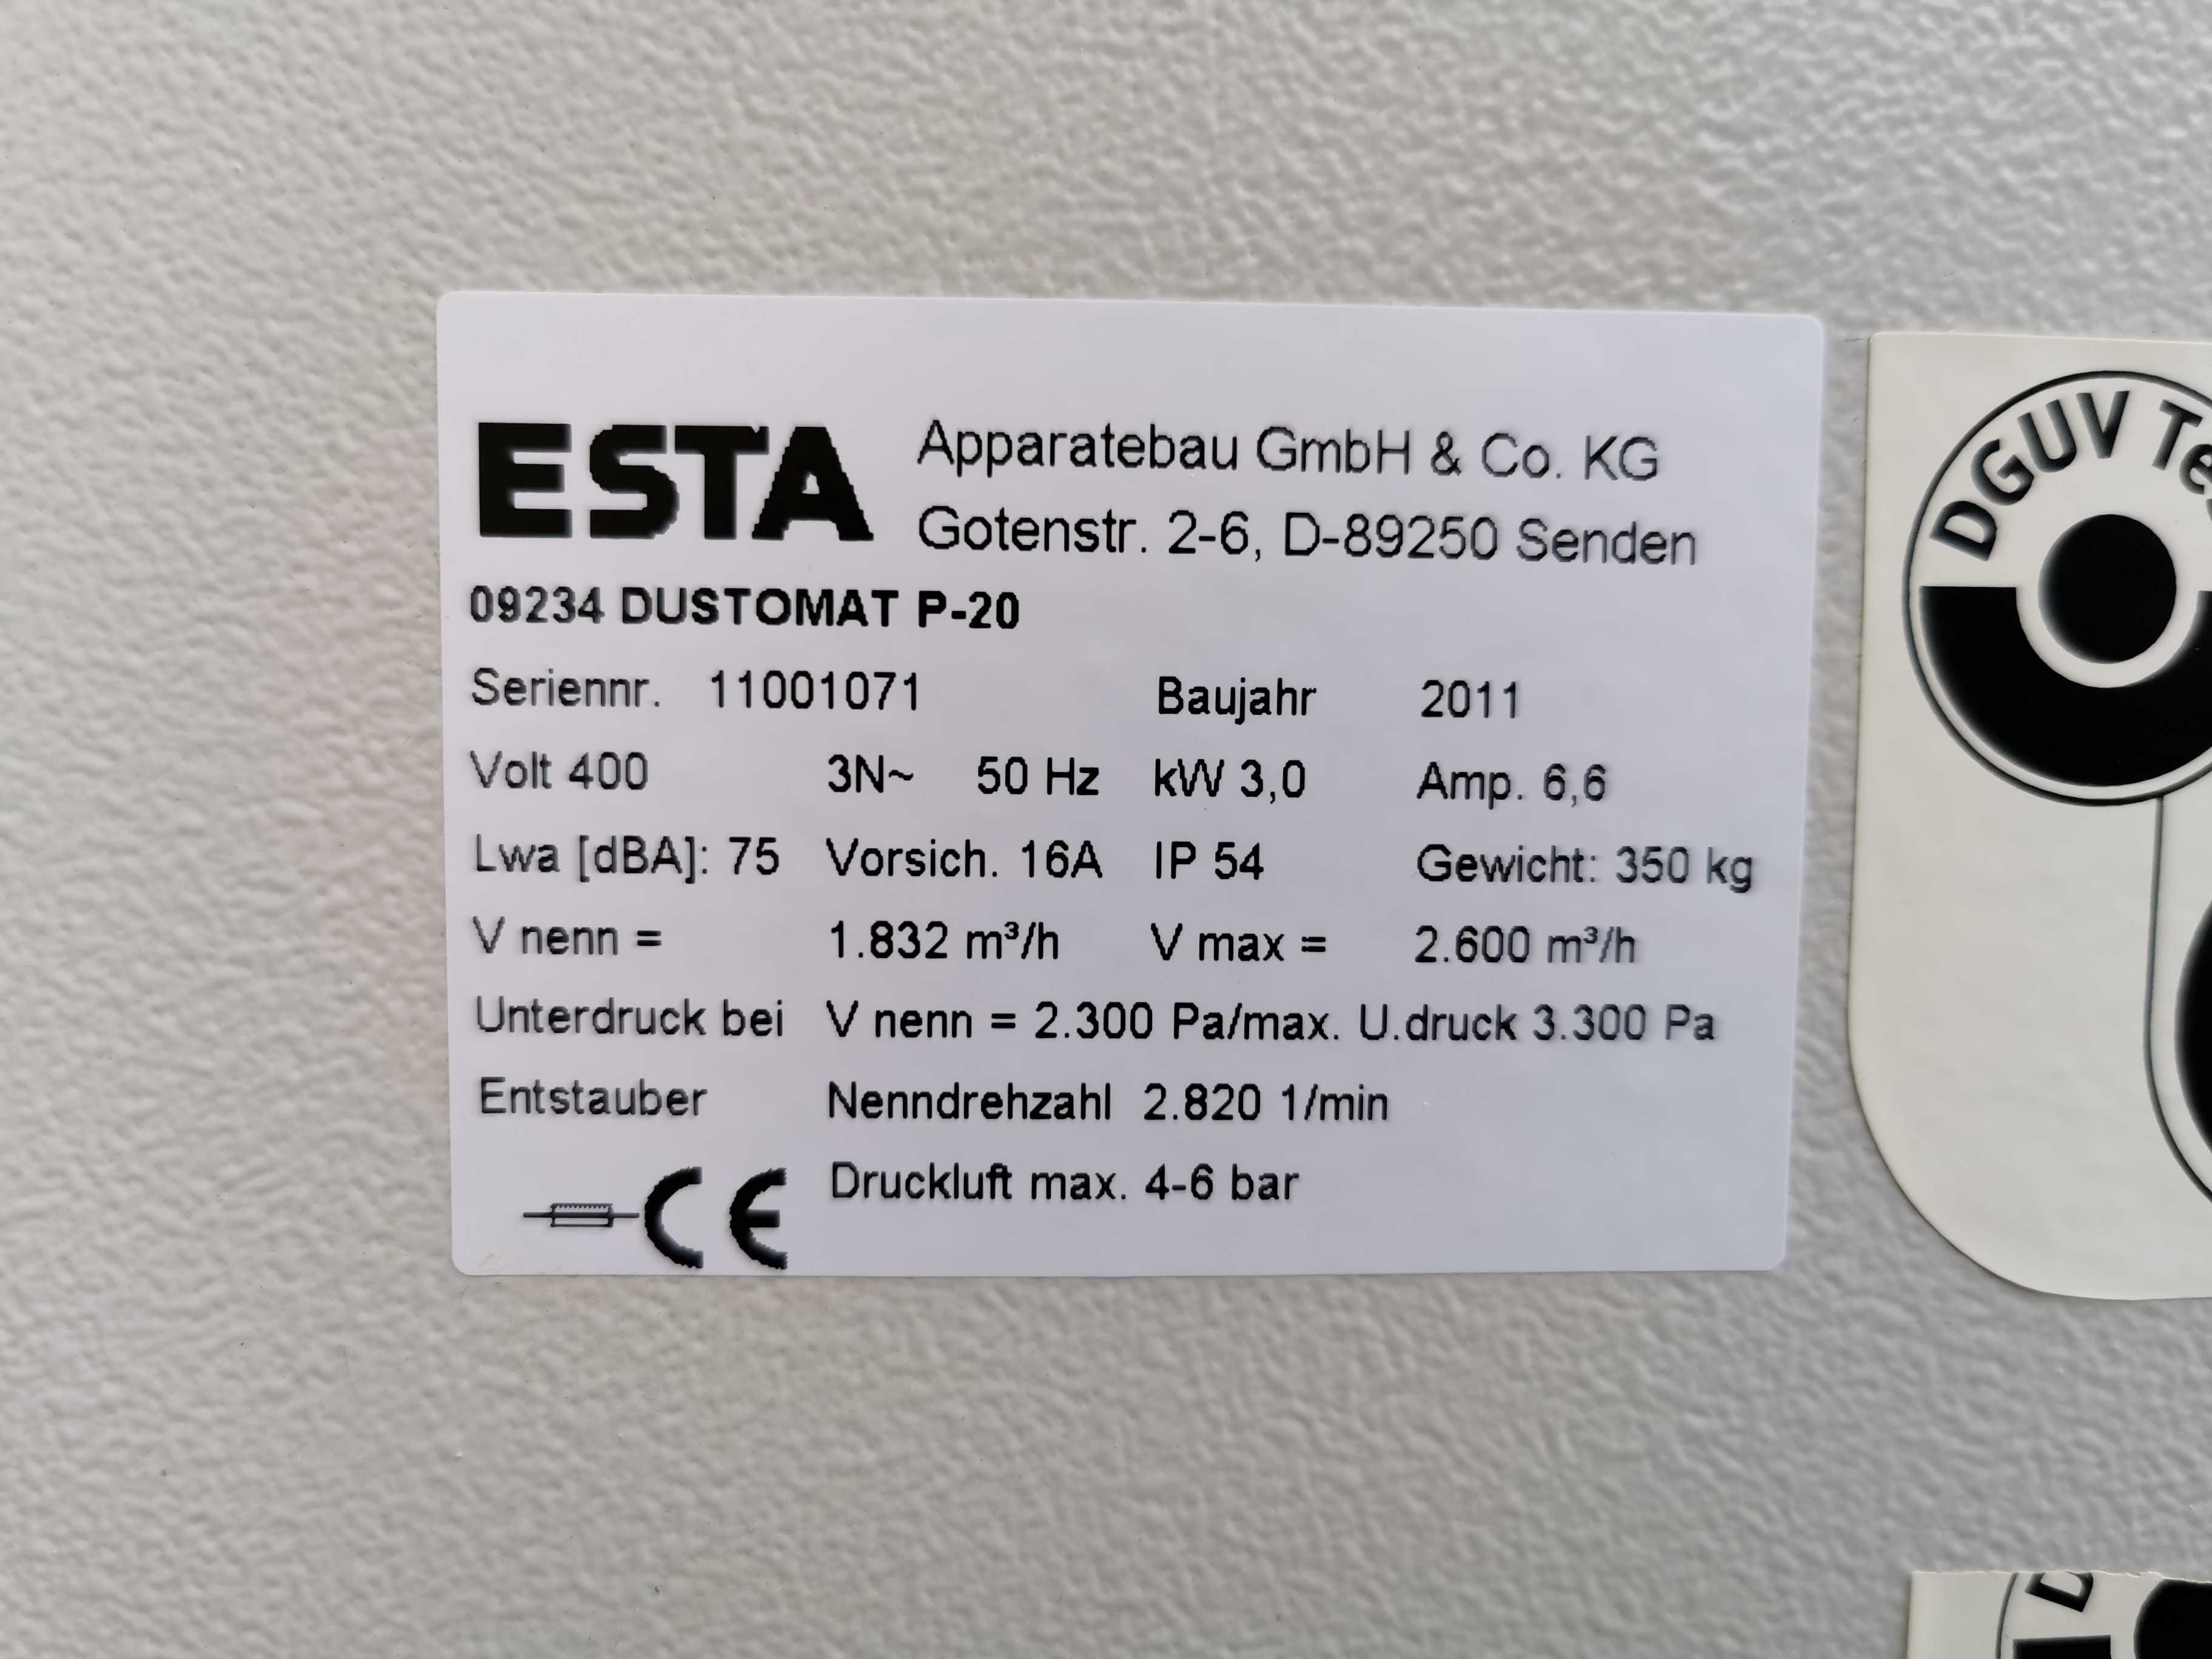 Odciąg pyłu,wyciąg,filtr samoczyszczący ESTA Dustomat P-20